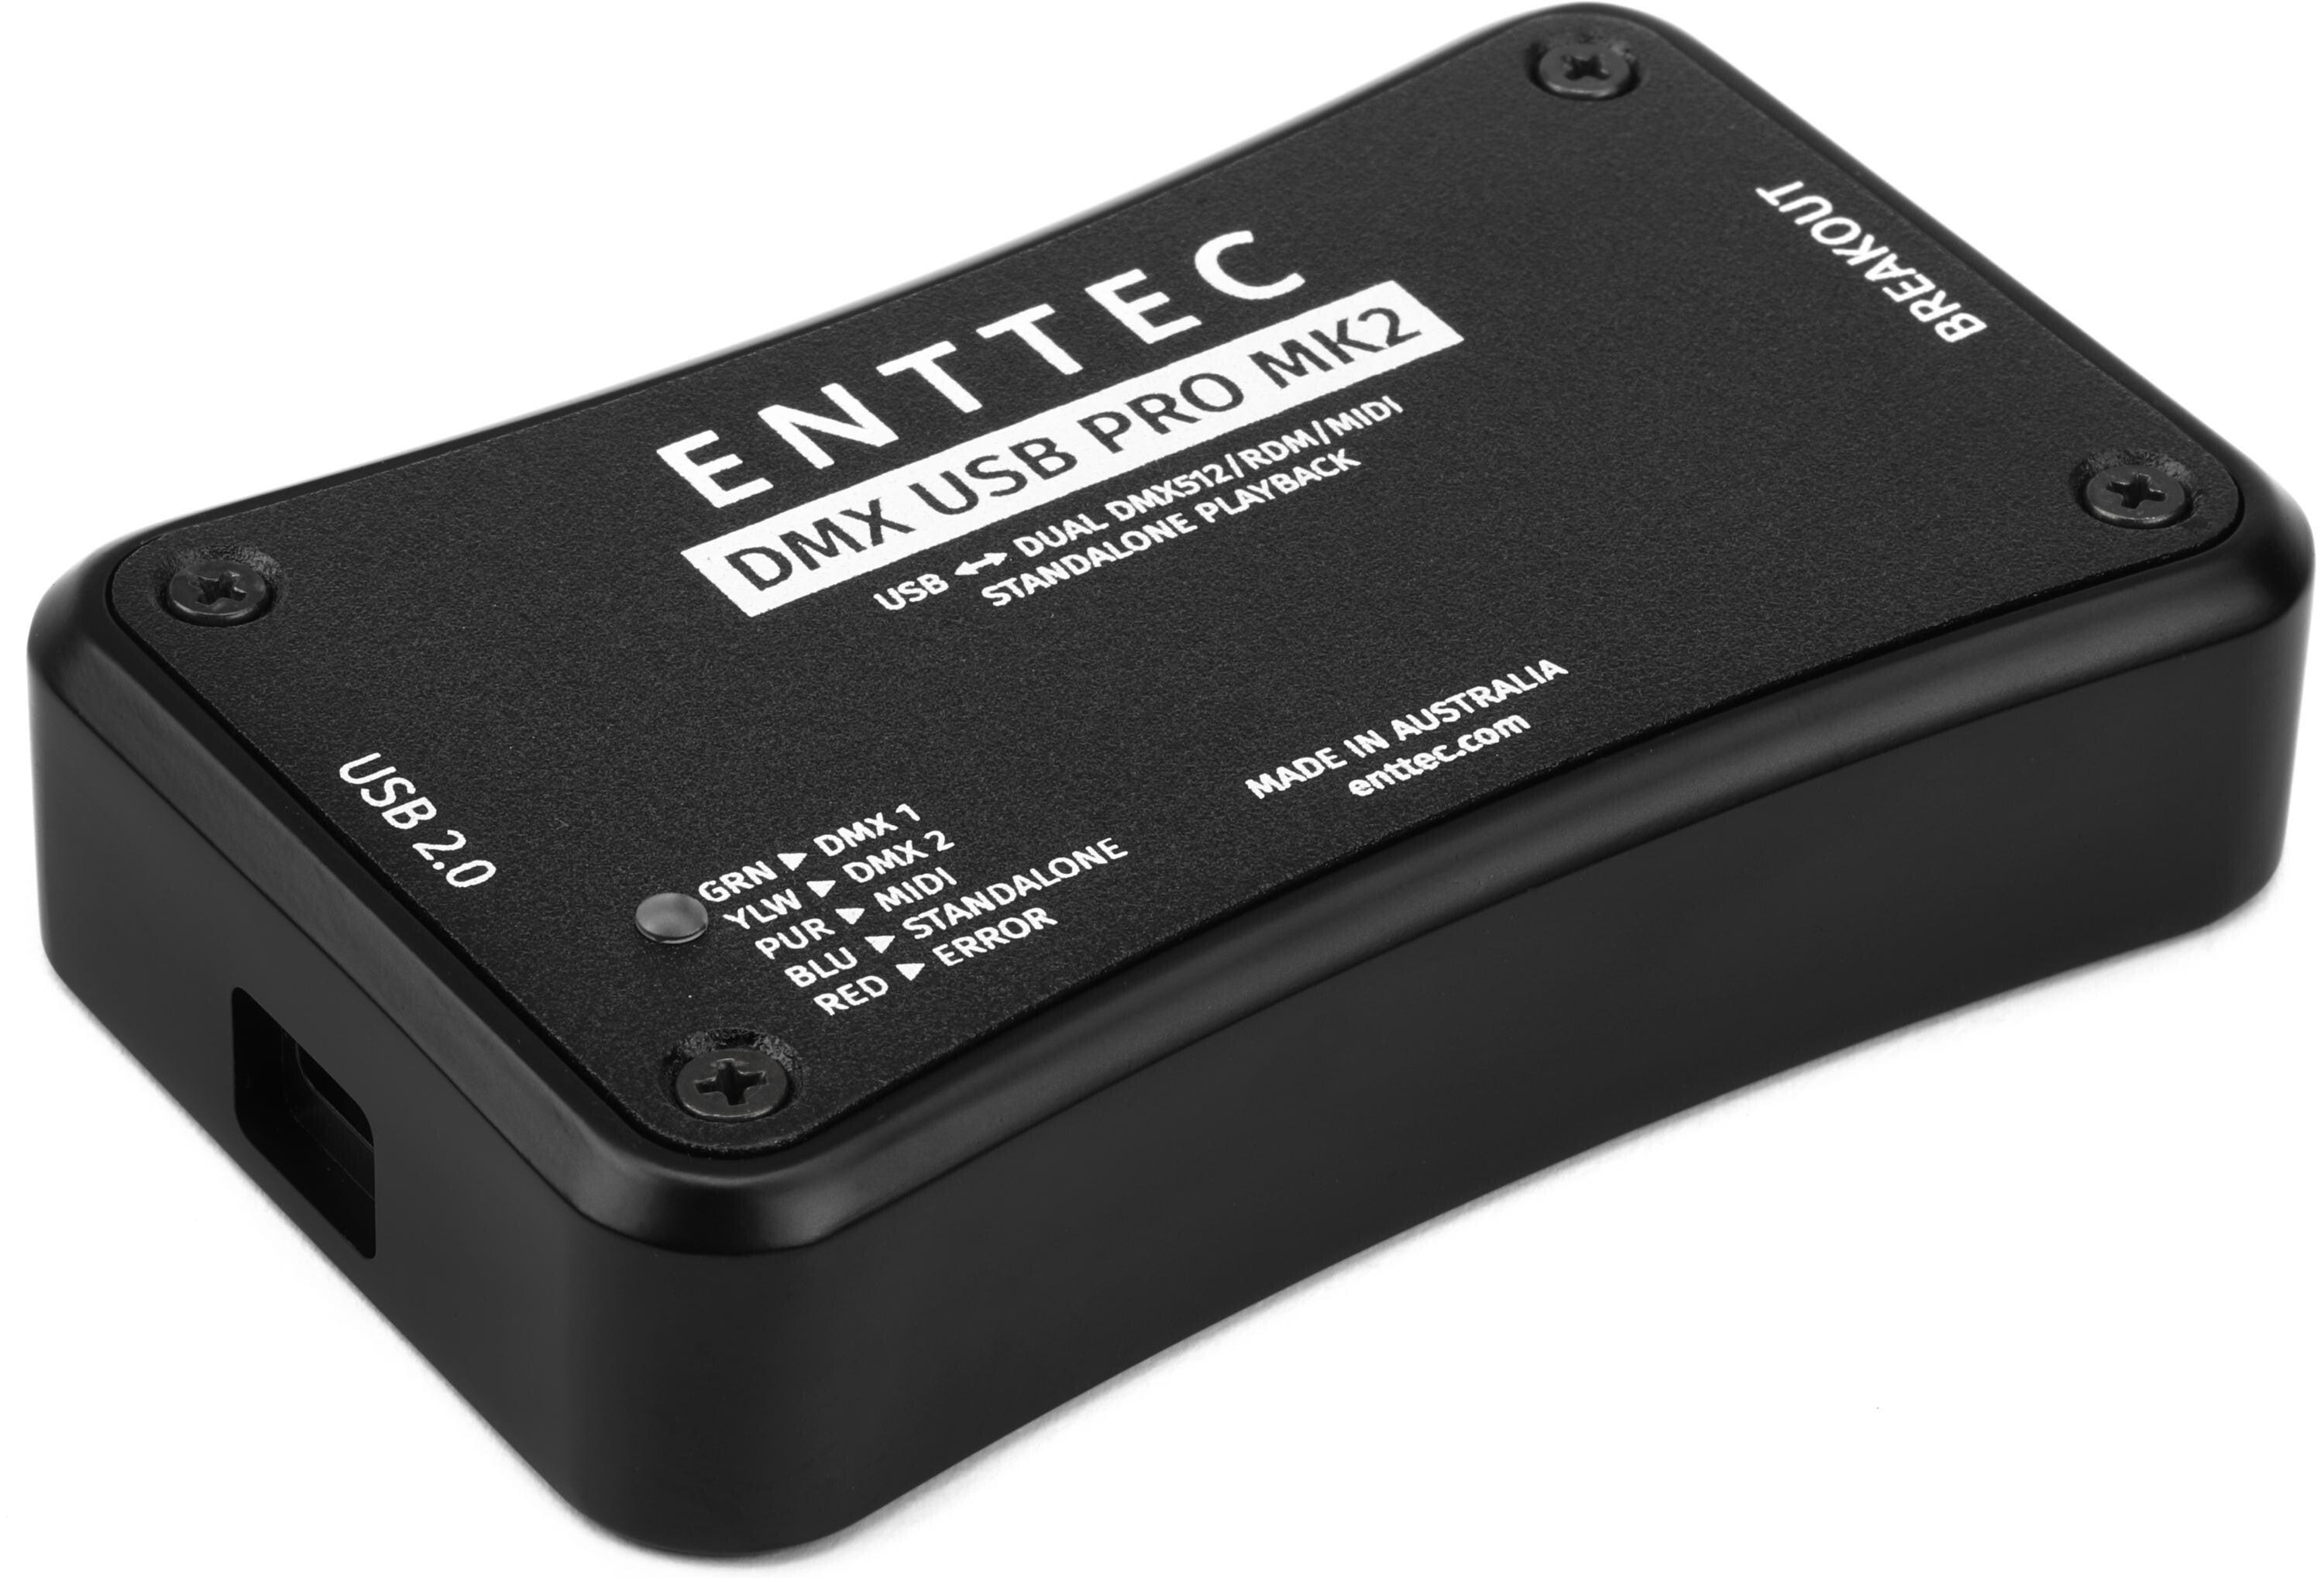 ENTTEC DMX USB Pro2 1024-Ch USB DMX Interface